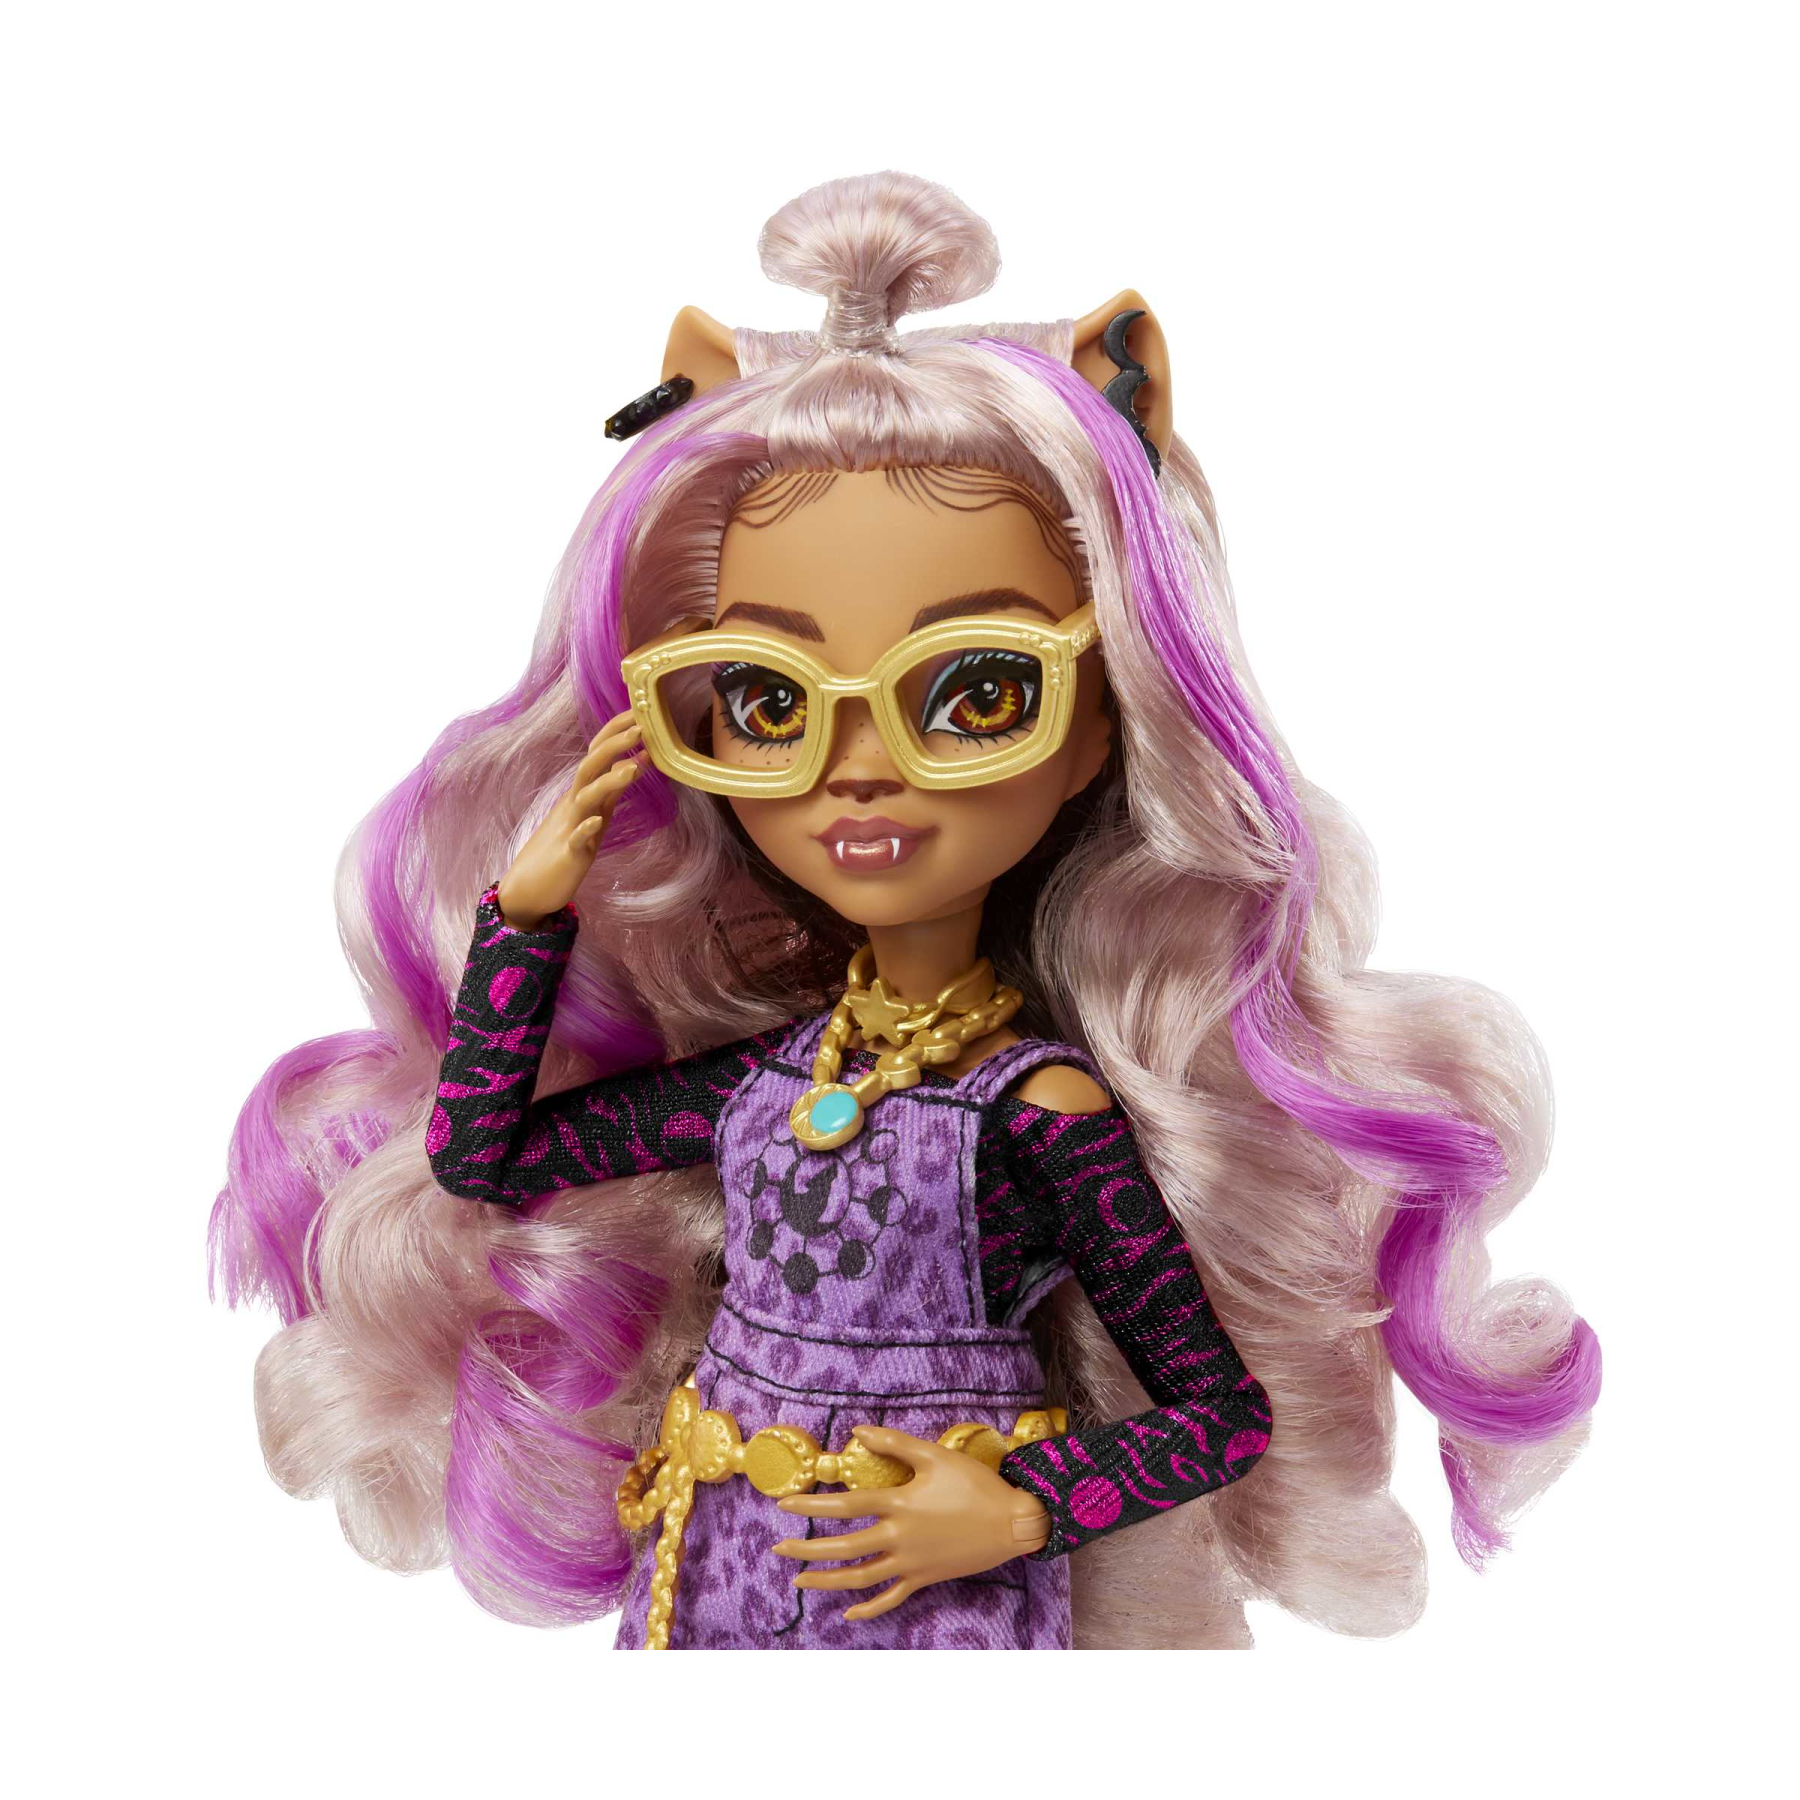 Monster high - clawdeen, bambola con accessori e gattino, snodata e alla moda con capelli con ciocche viola, giocattolo per bambini, 4+ anni, hhk52 - Monster High